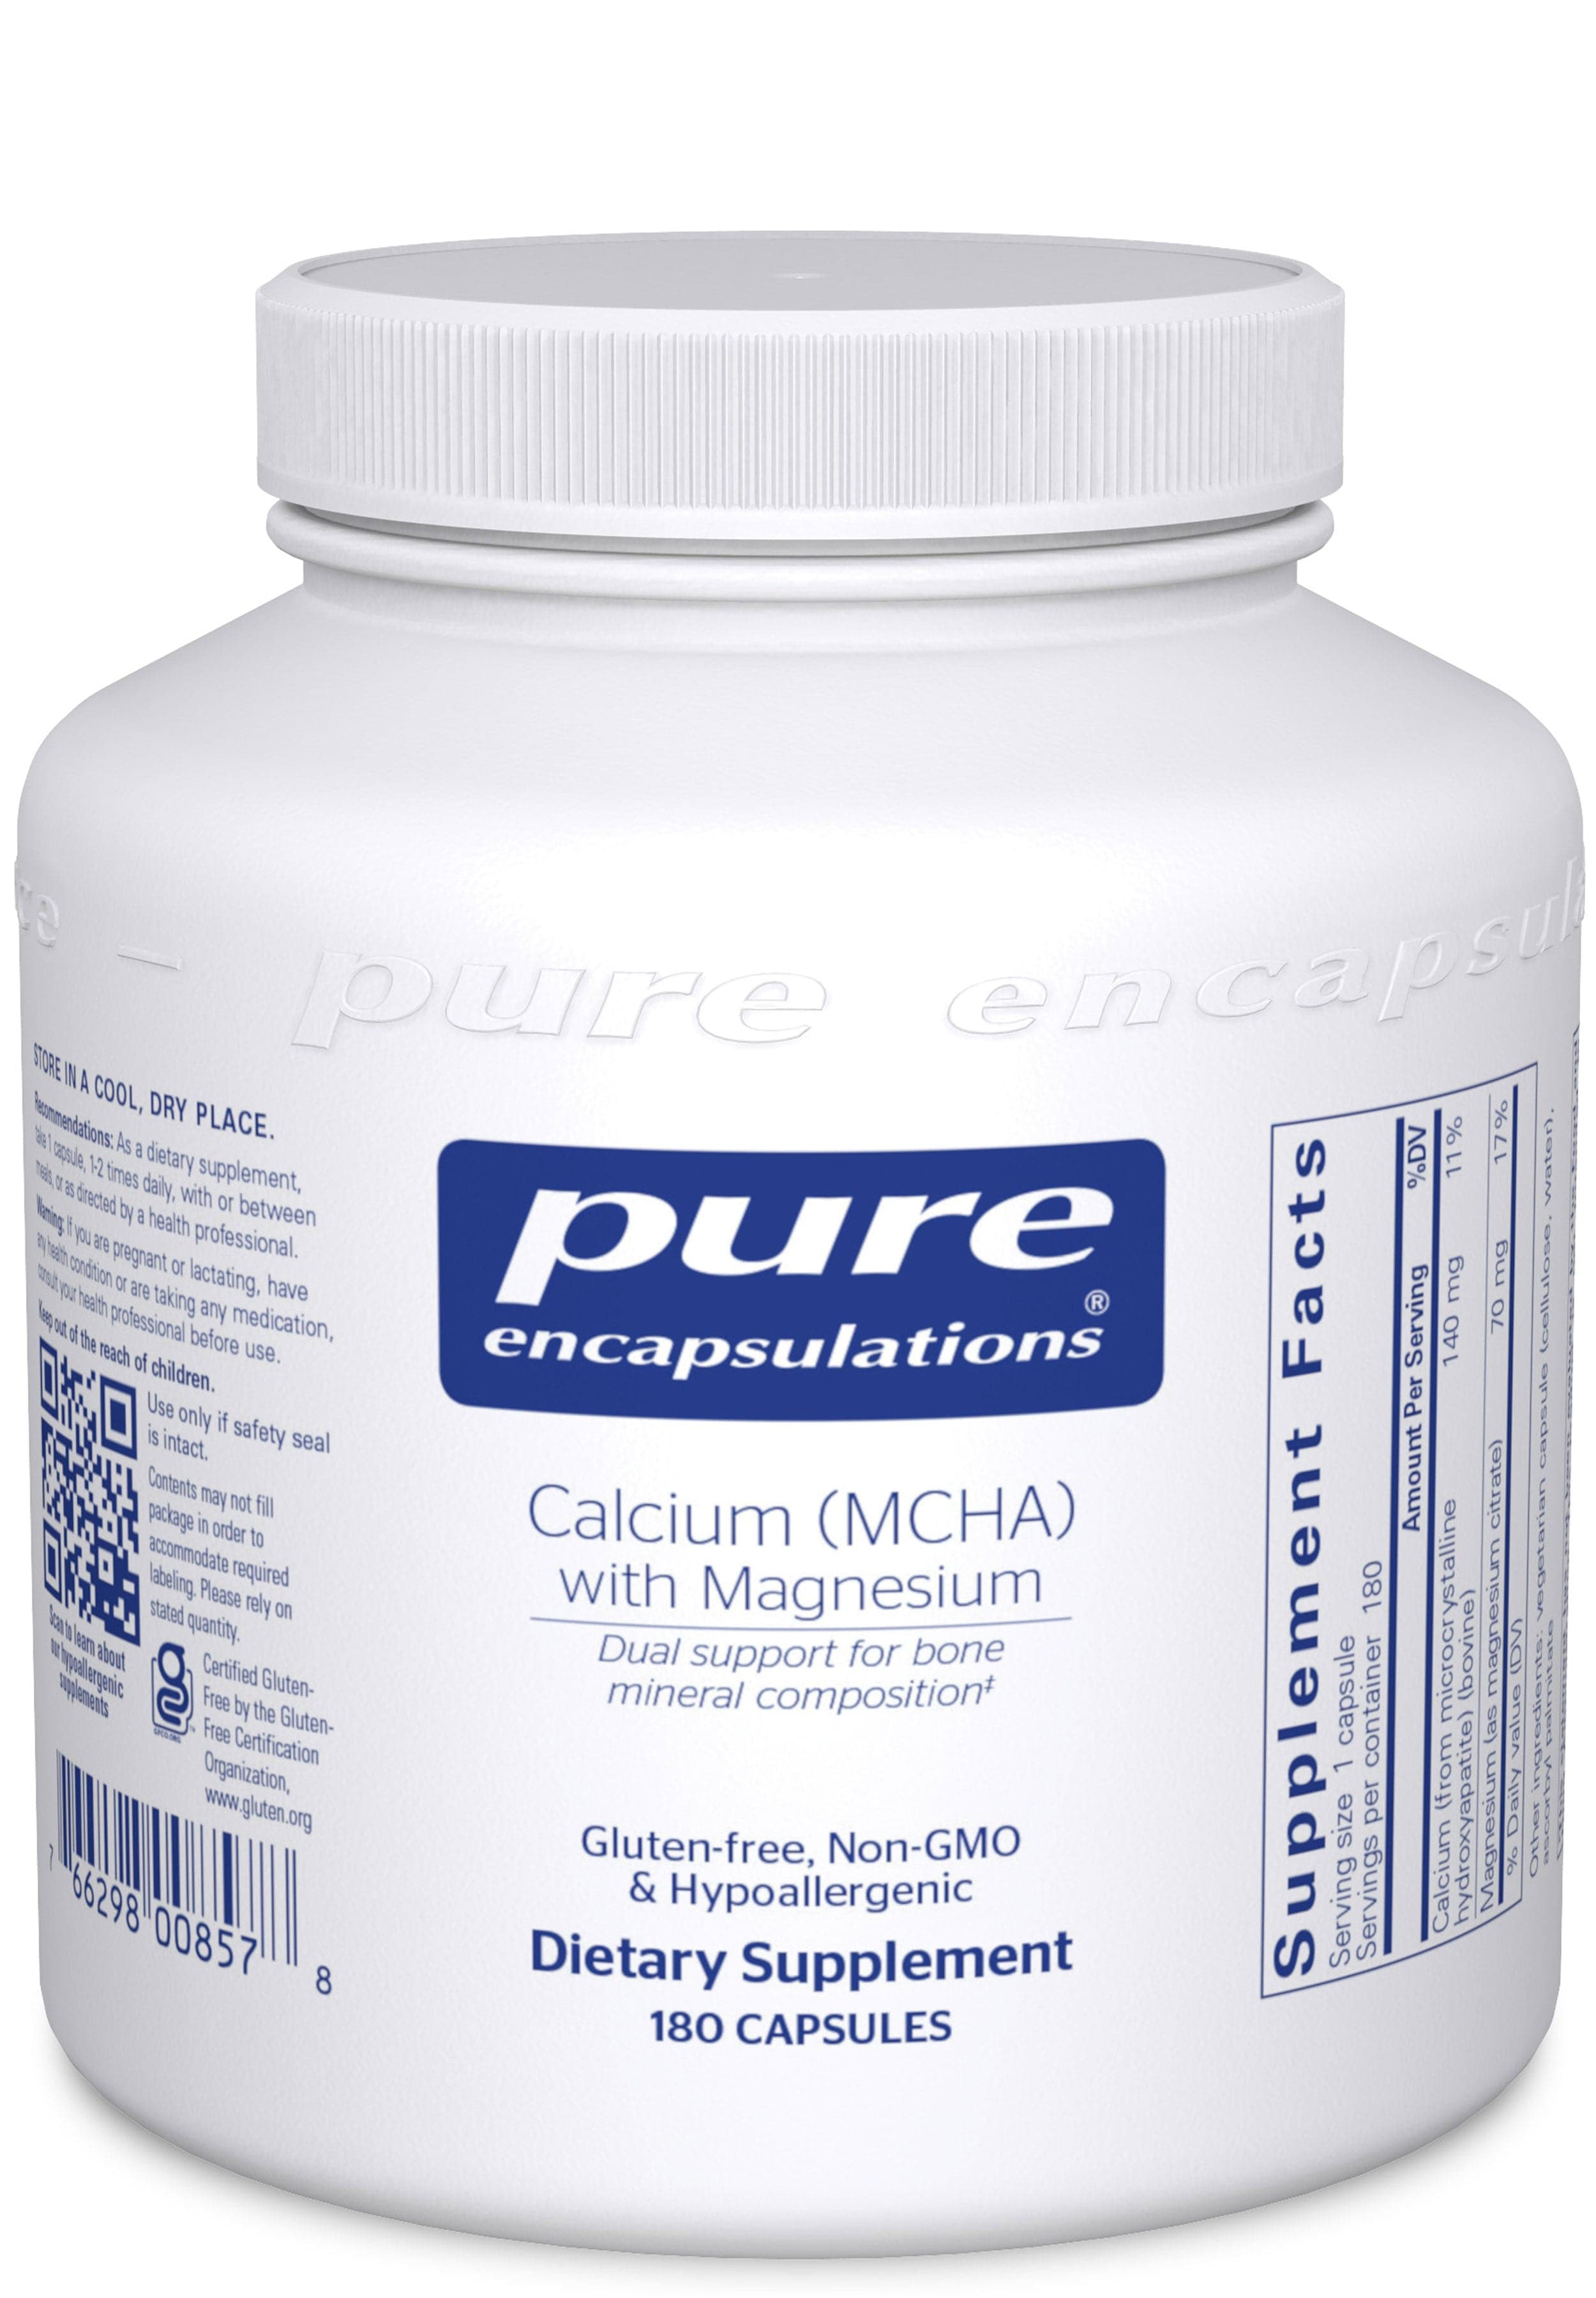 Pure Encapsulations Calcium (MCHA) with Magnesium